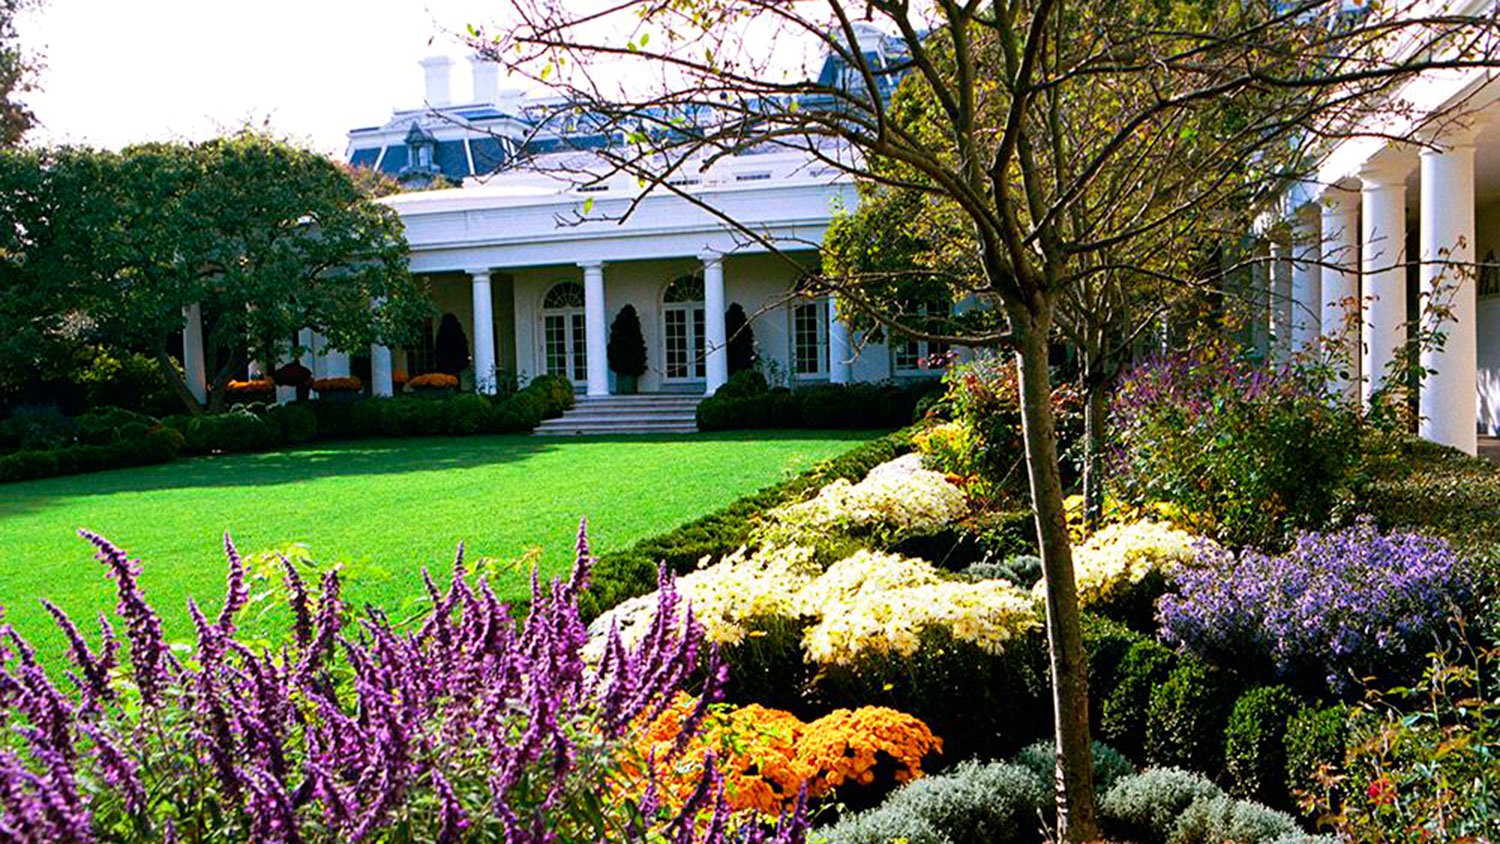 Մելանյա Թրամփը պատասխանել է Սպիտակ տան Վարդերի այգու վերակառուցումը ծաղրող պատմաբանին